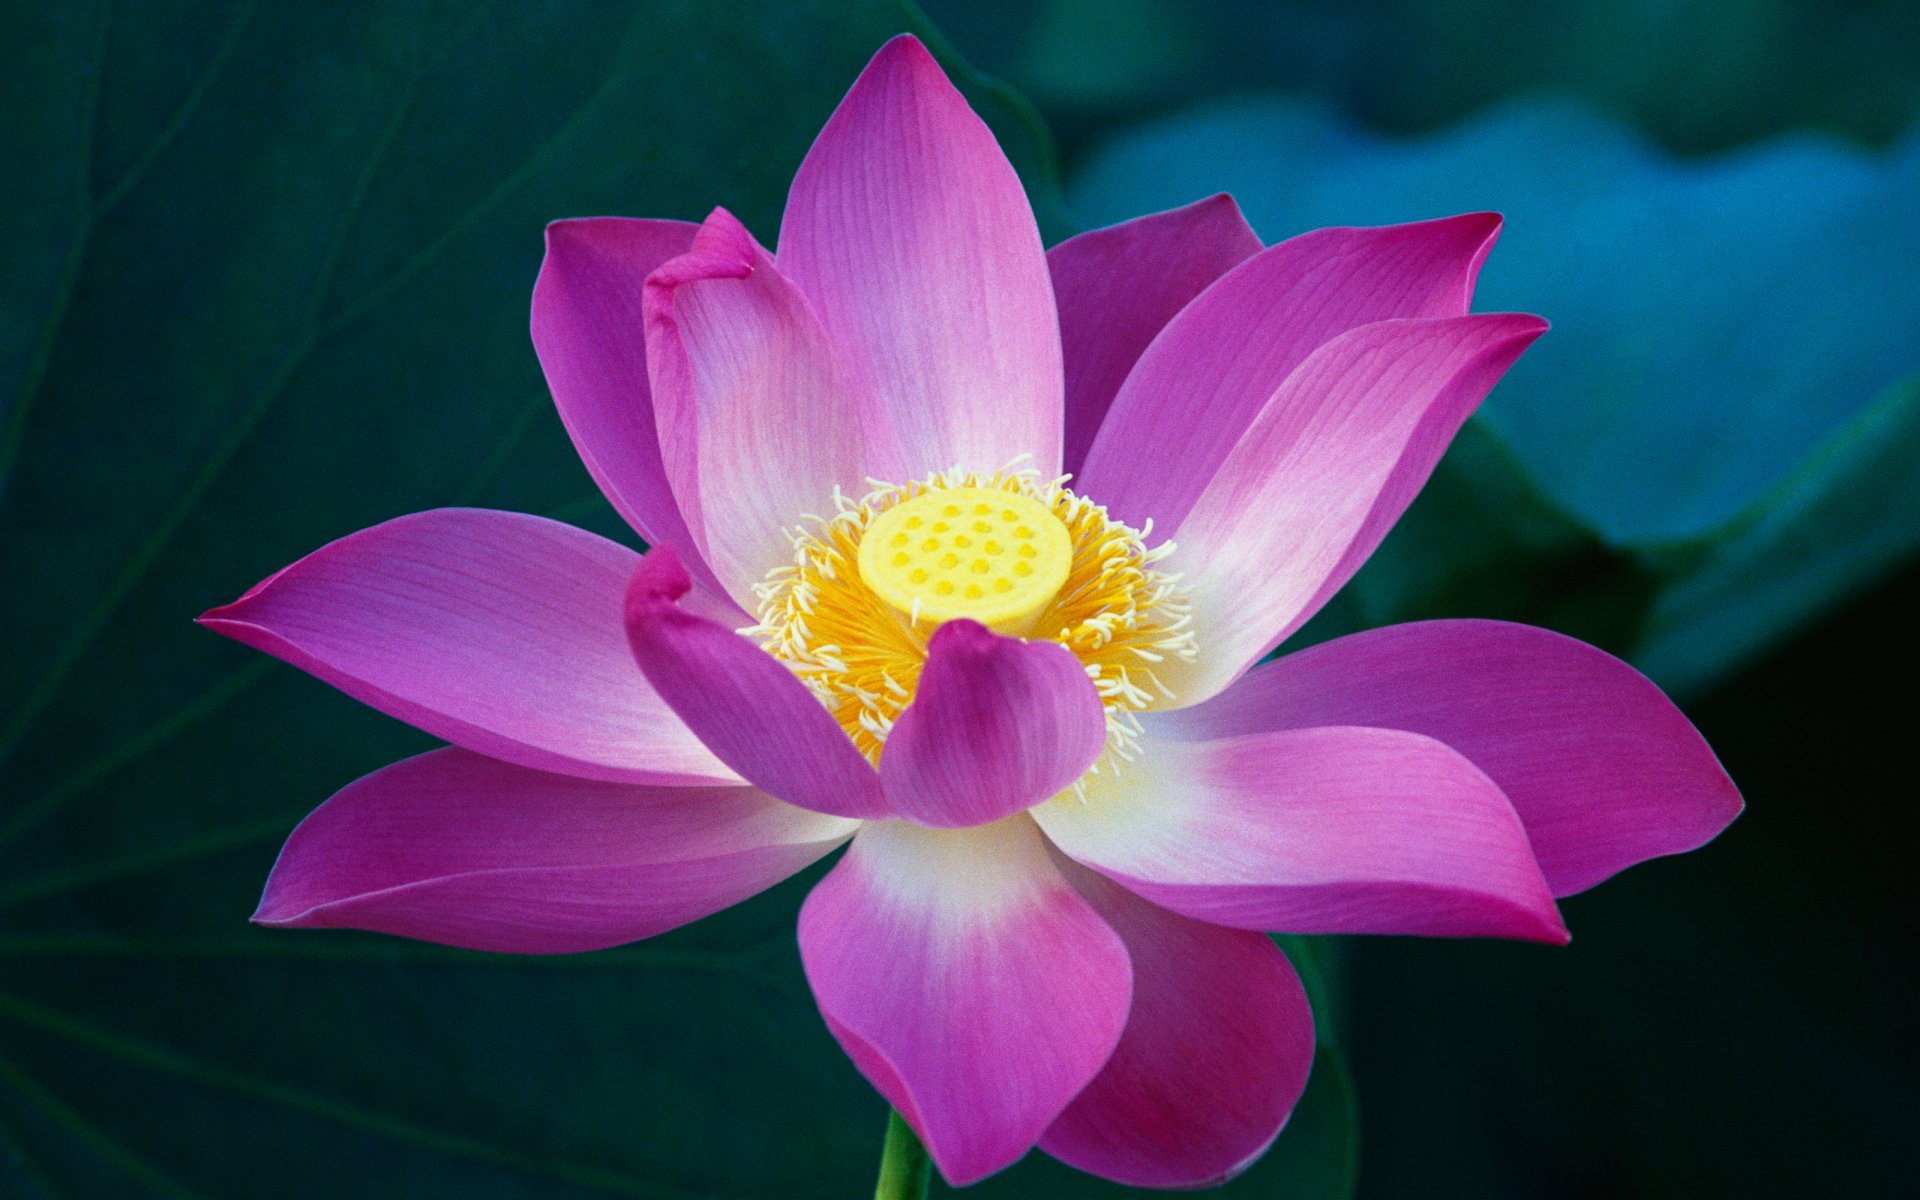 Hãy chiêm ngưỡng hình ảnh tuyệt đẹp về hoa sen - loài hoa được xem là Thần Quyền và thường được coi là biểu tượng của sự tinh khiết và thanh cao trong văn hóa Việt Nam. Bạn sẽ không thể rời mắt khỏi vẻ đẹp hoàn hảo của những cánh sen nhẹ nhàng trên mặt nước trong veo.